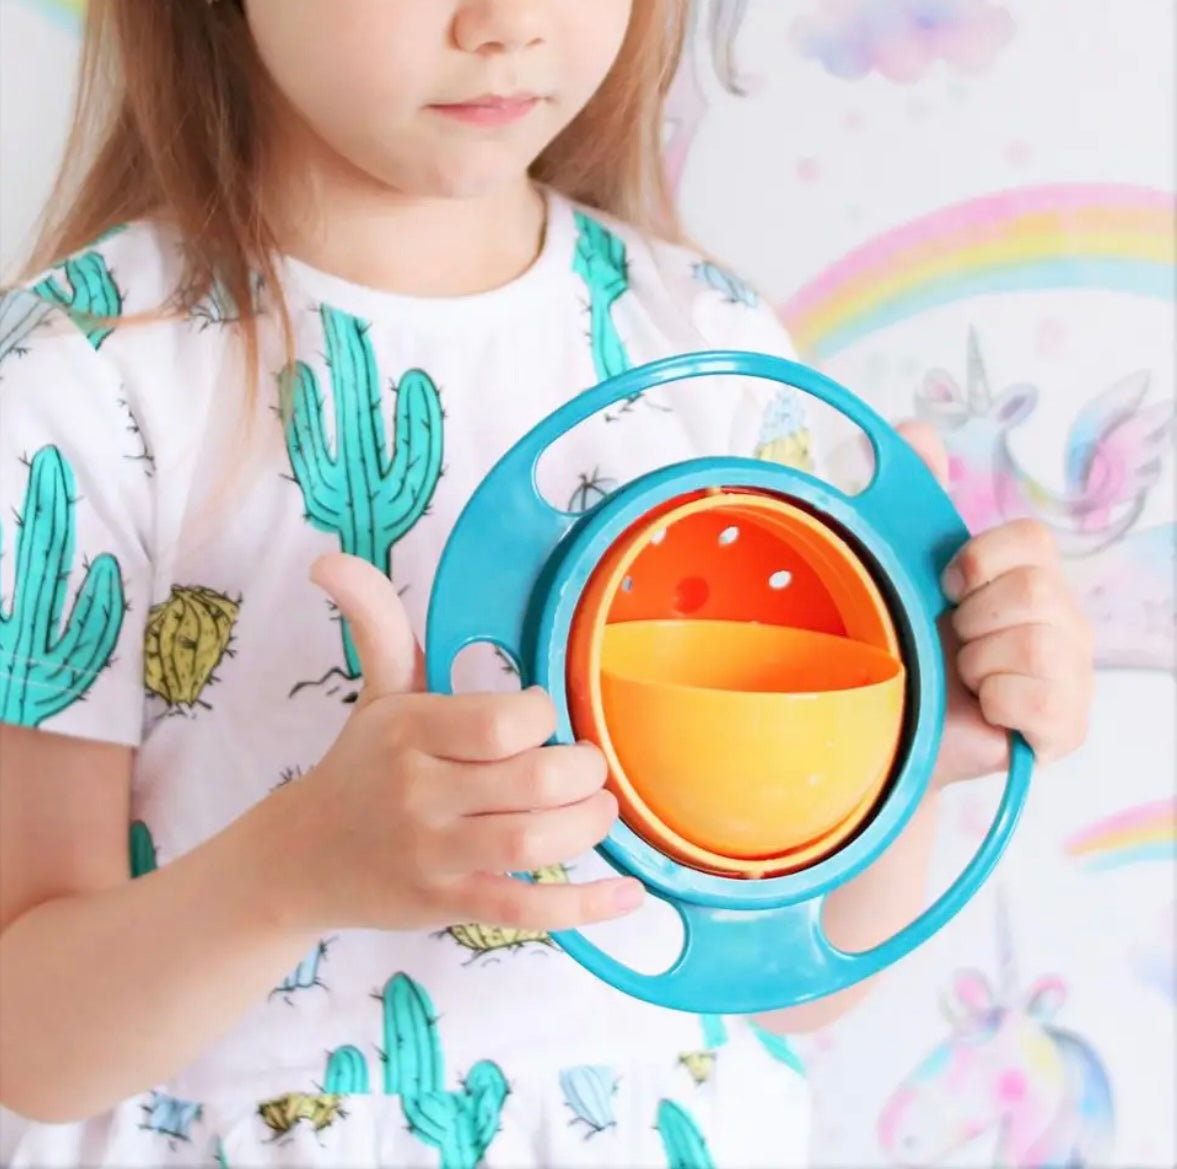 Gyro Kom Praktisch Ontwerp Kinderen 360 Rotatie balans